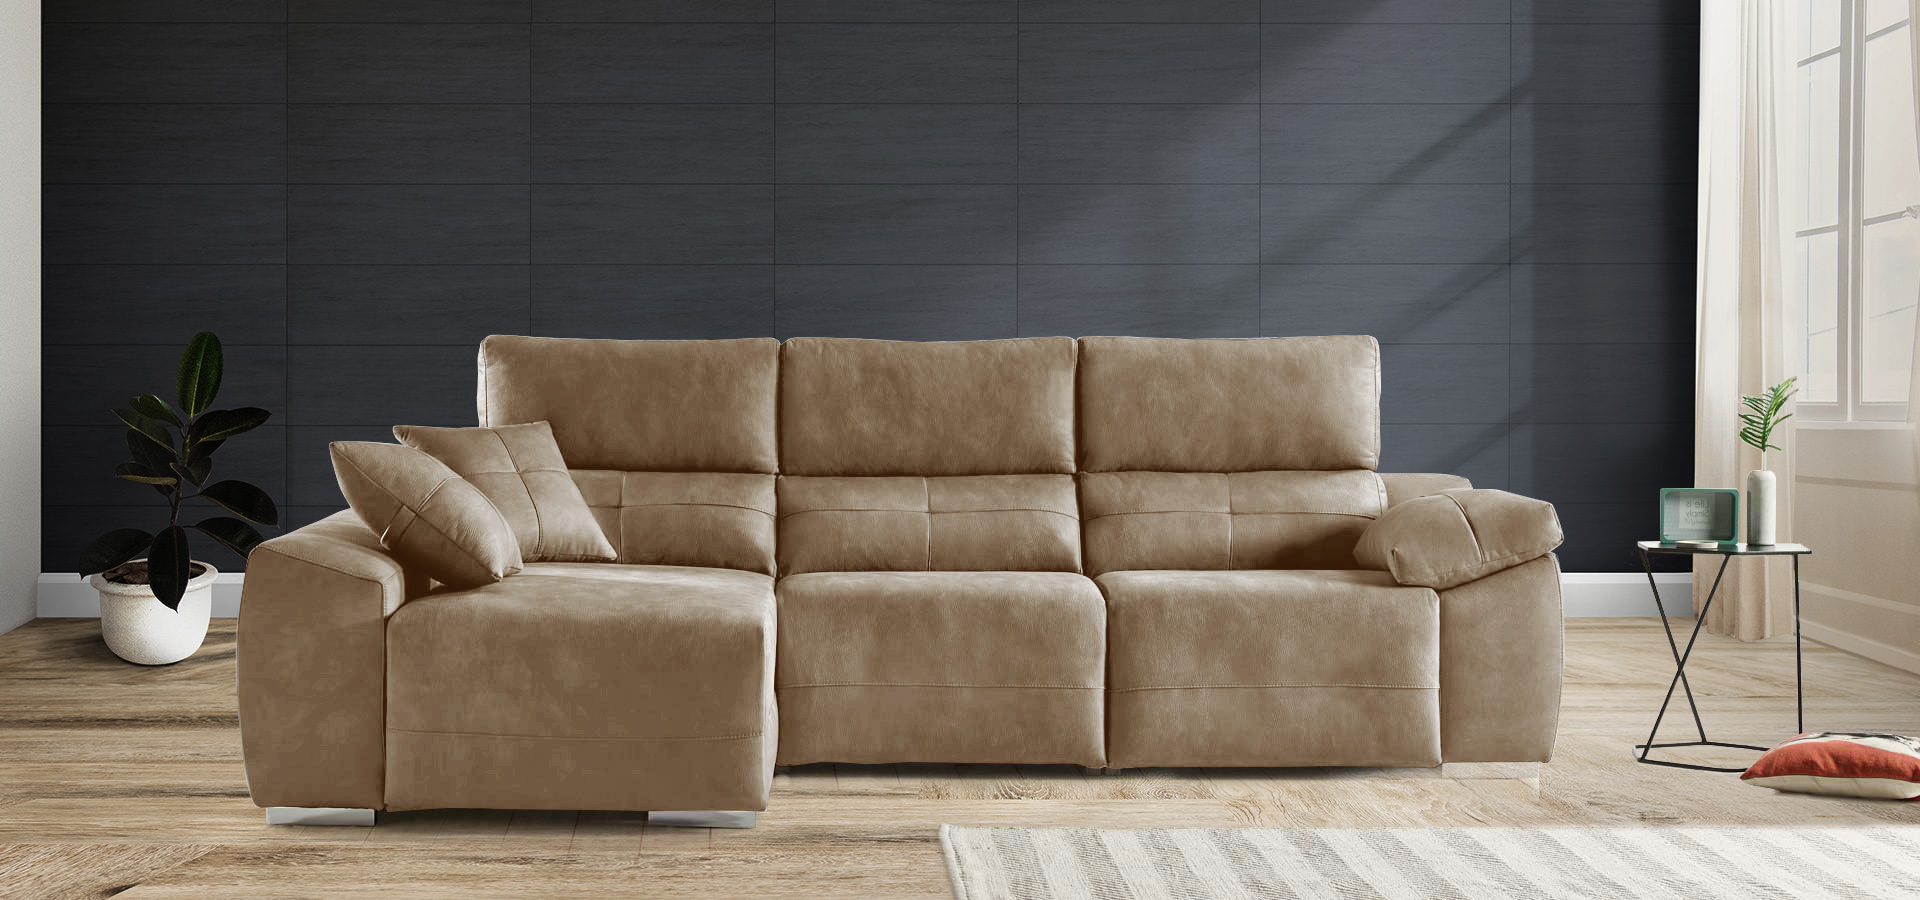 ms-merkasofa-sofas-precios-fabrica